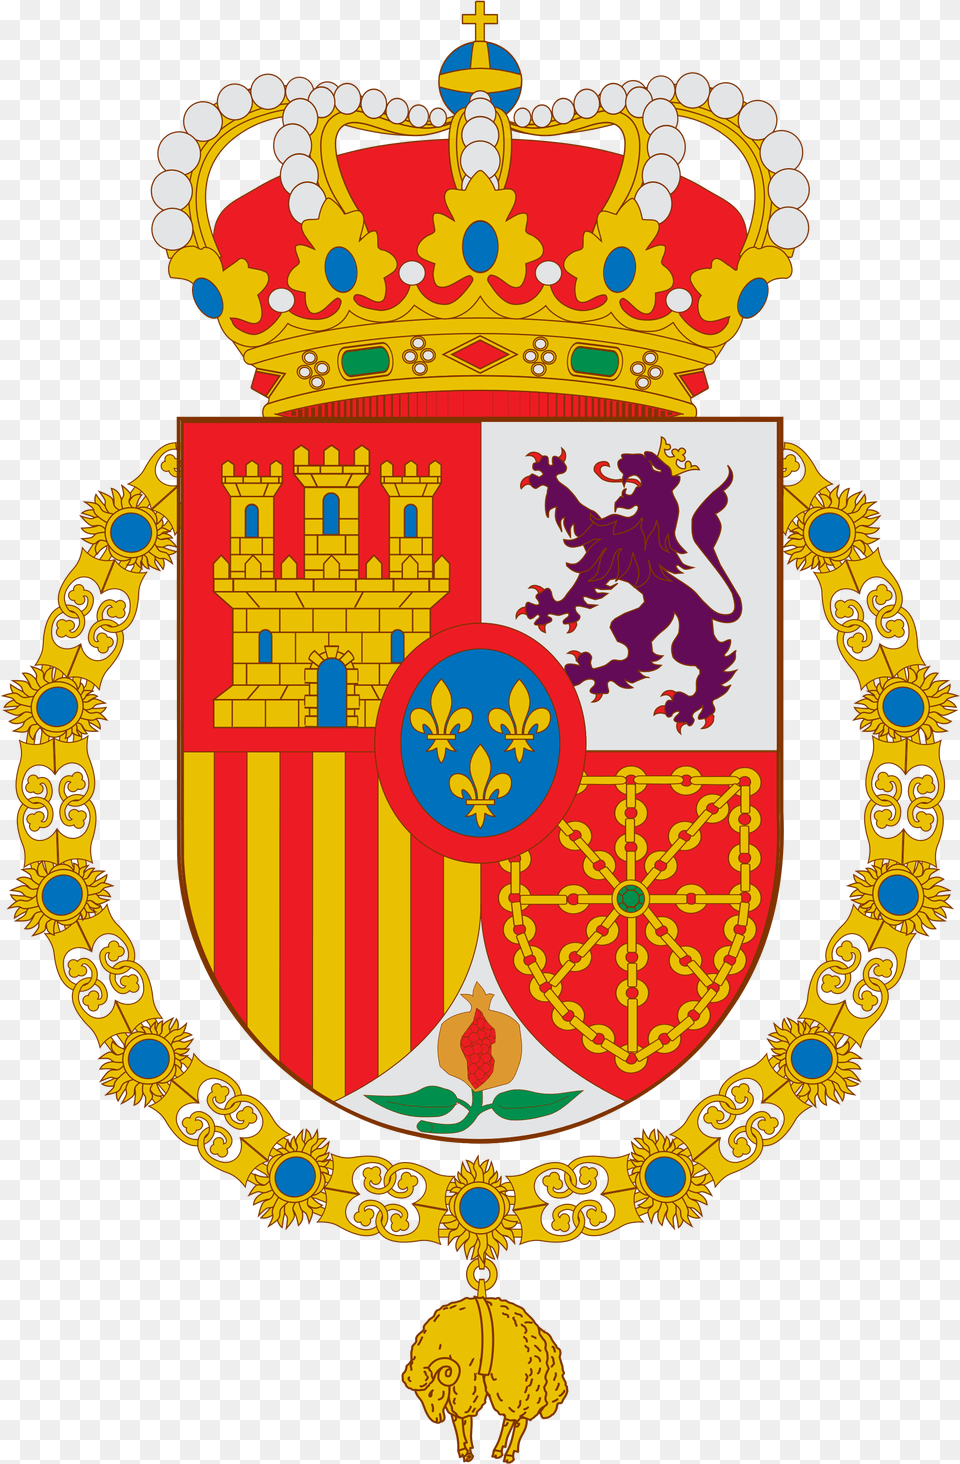 Escudo Felipe Vi De Espana Grande Svg, Badge, Logo, Symbol, Emblem Png Image